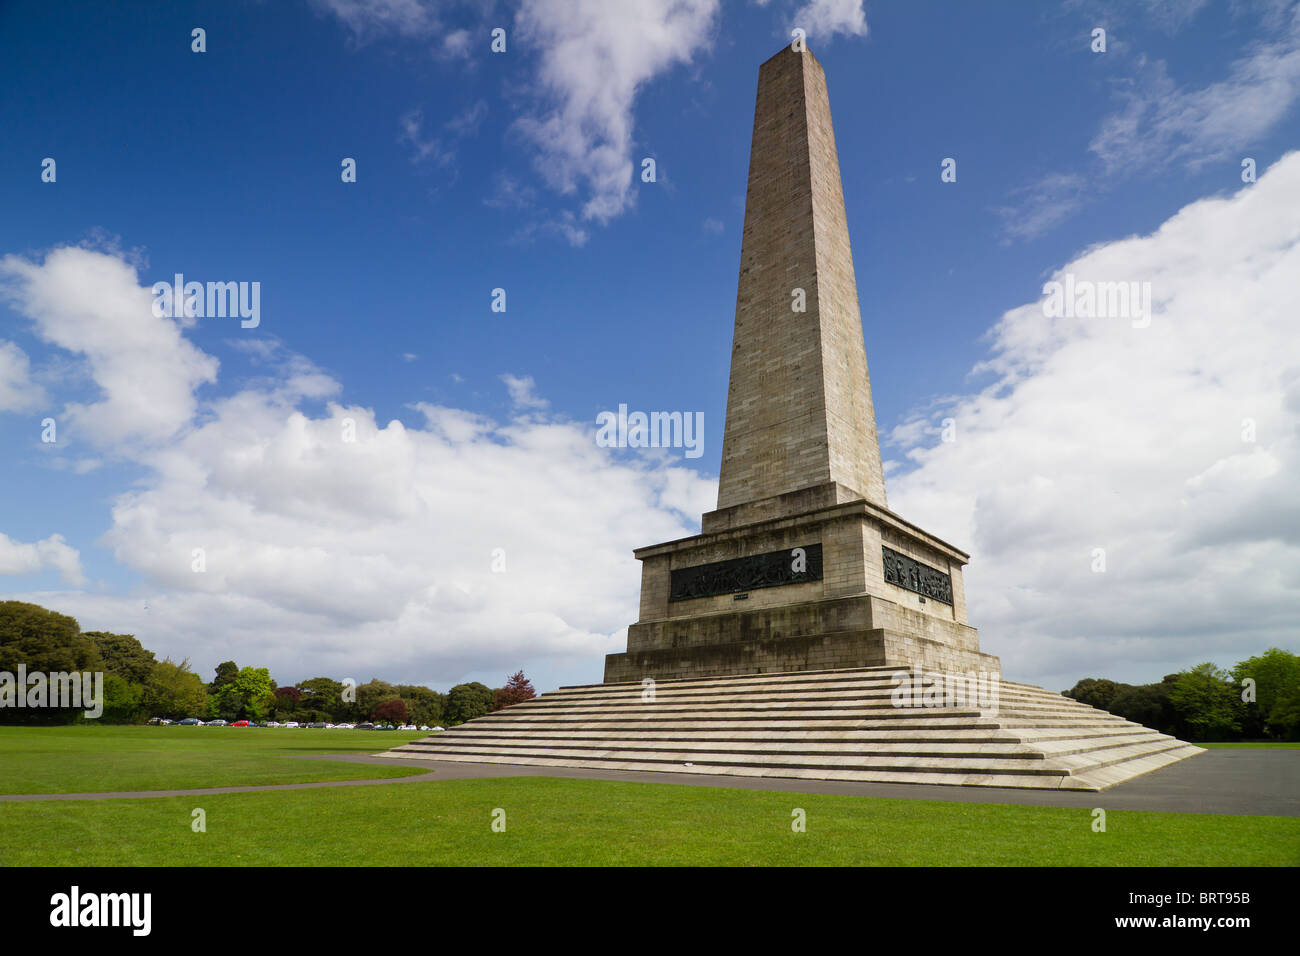 Wellington Testimonial ist 62 m hohen Obelisken befindet sich im Phoenix Park, Dublin, Irland. Stockfoto